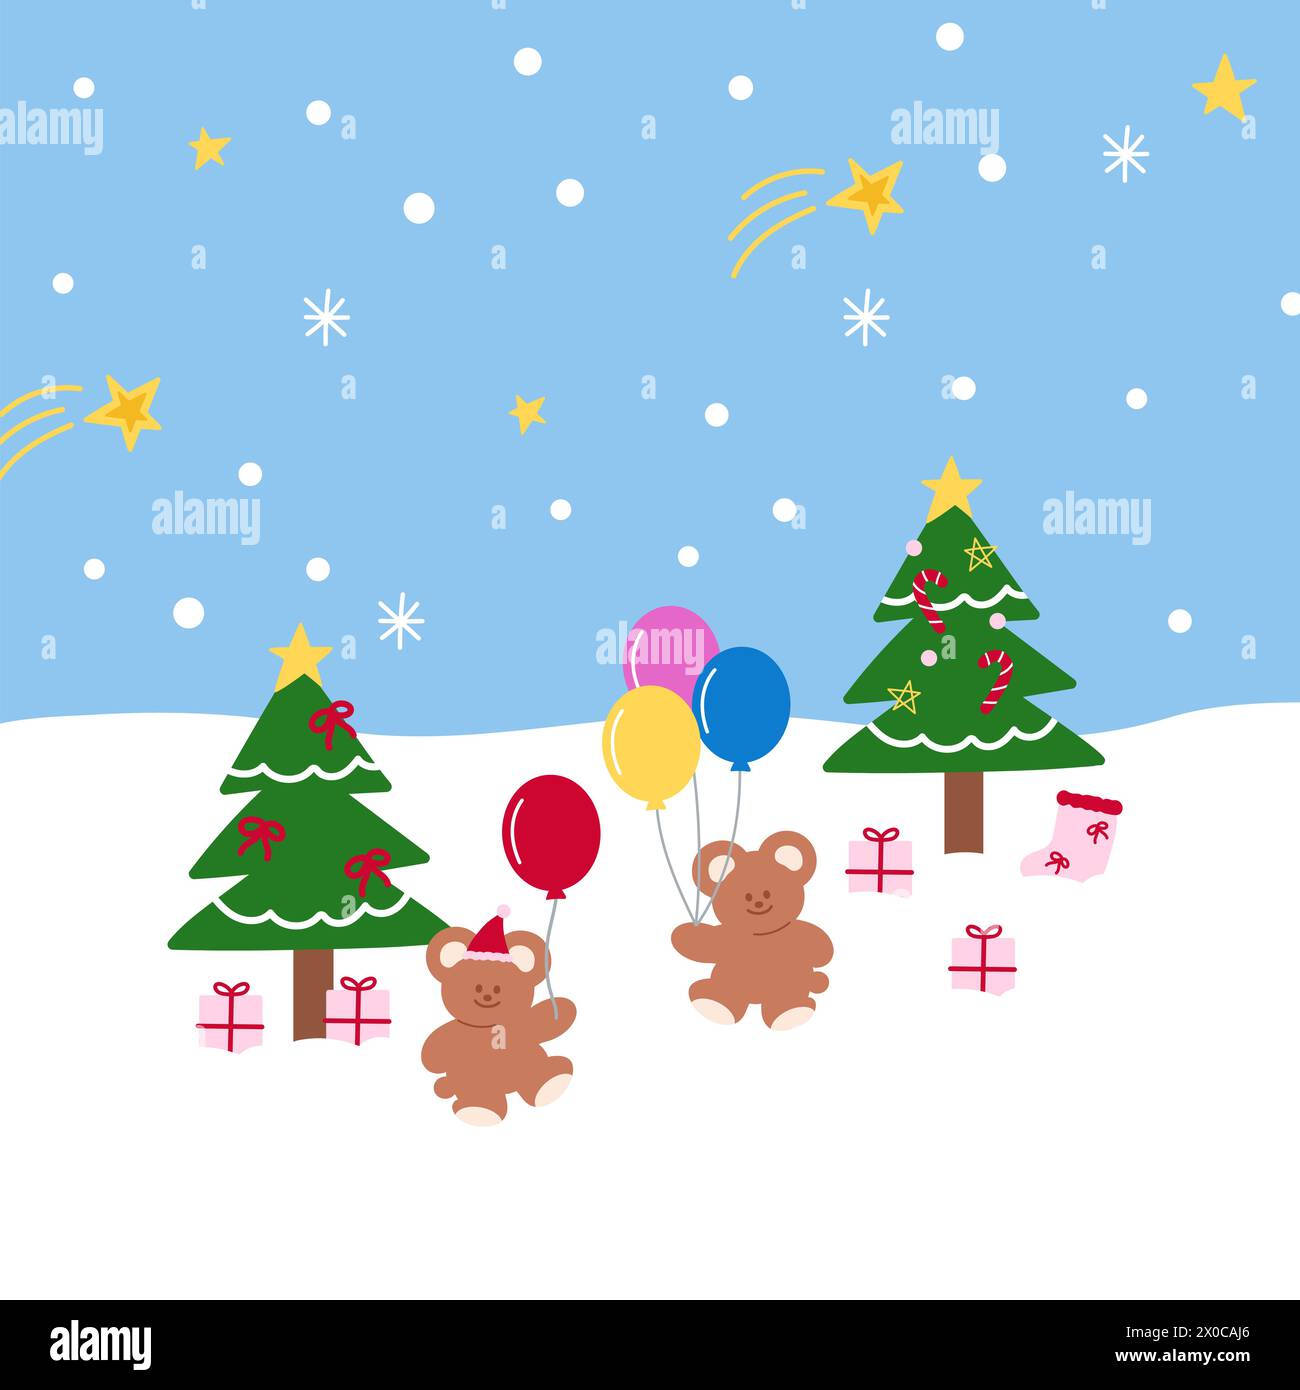 Illustrazioni di Natale e Capodanno di orsacchiotto, albero di Natale, neve, fiocco di neve, palloncini, confezione regalo su sfondo blu pastello per carta da parati e carta da parati Illustrazione Vettoriale